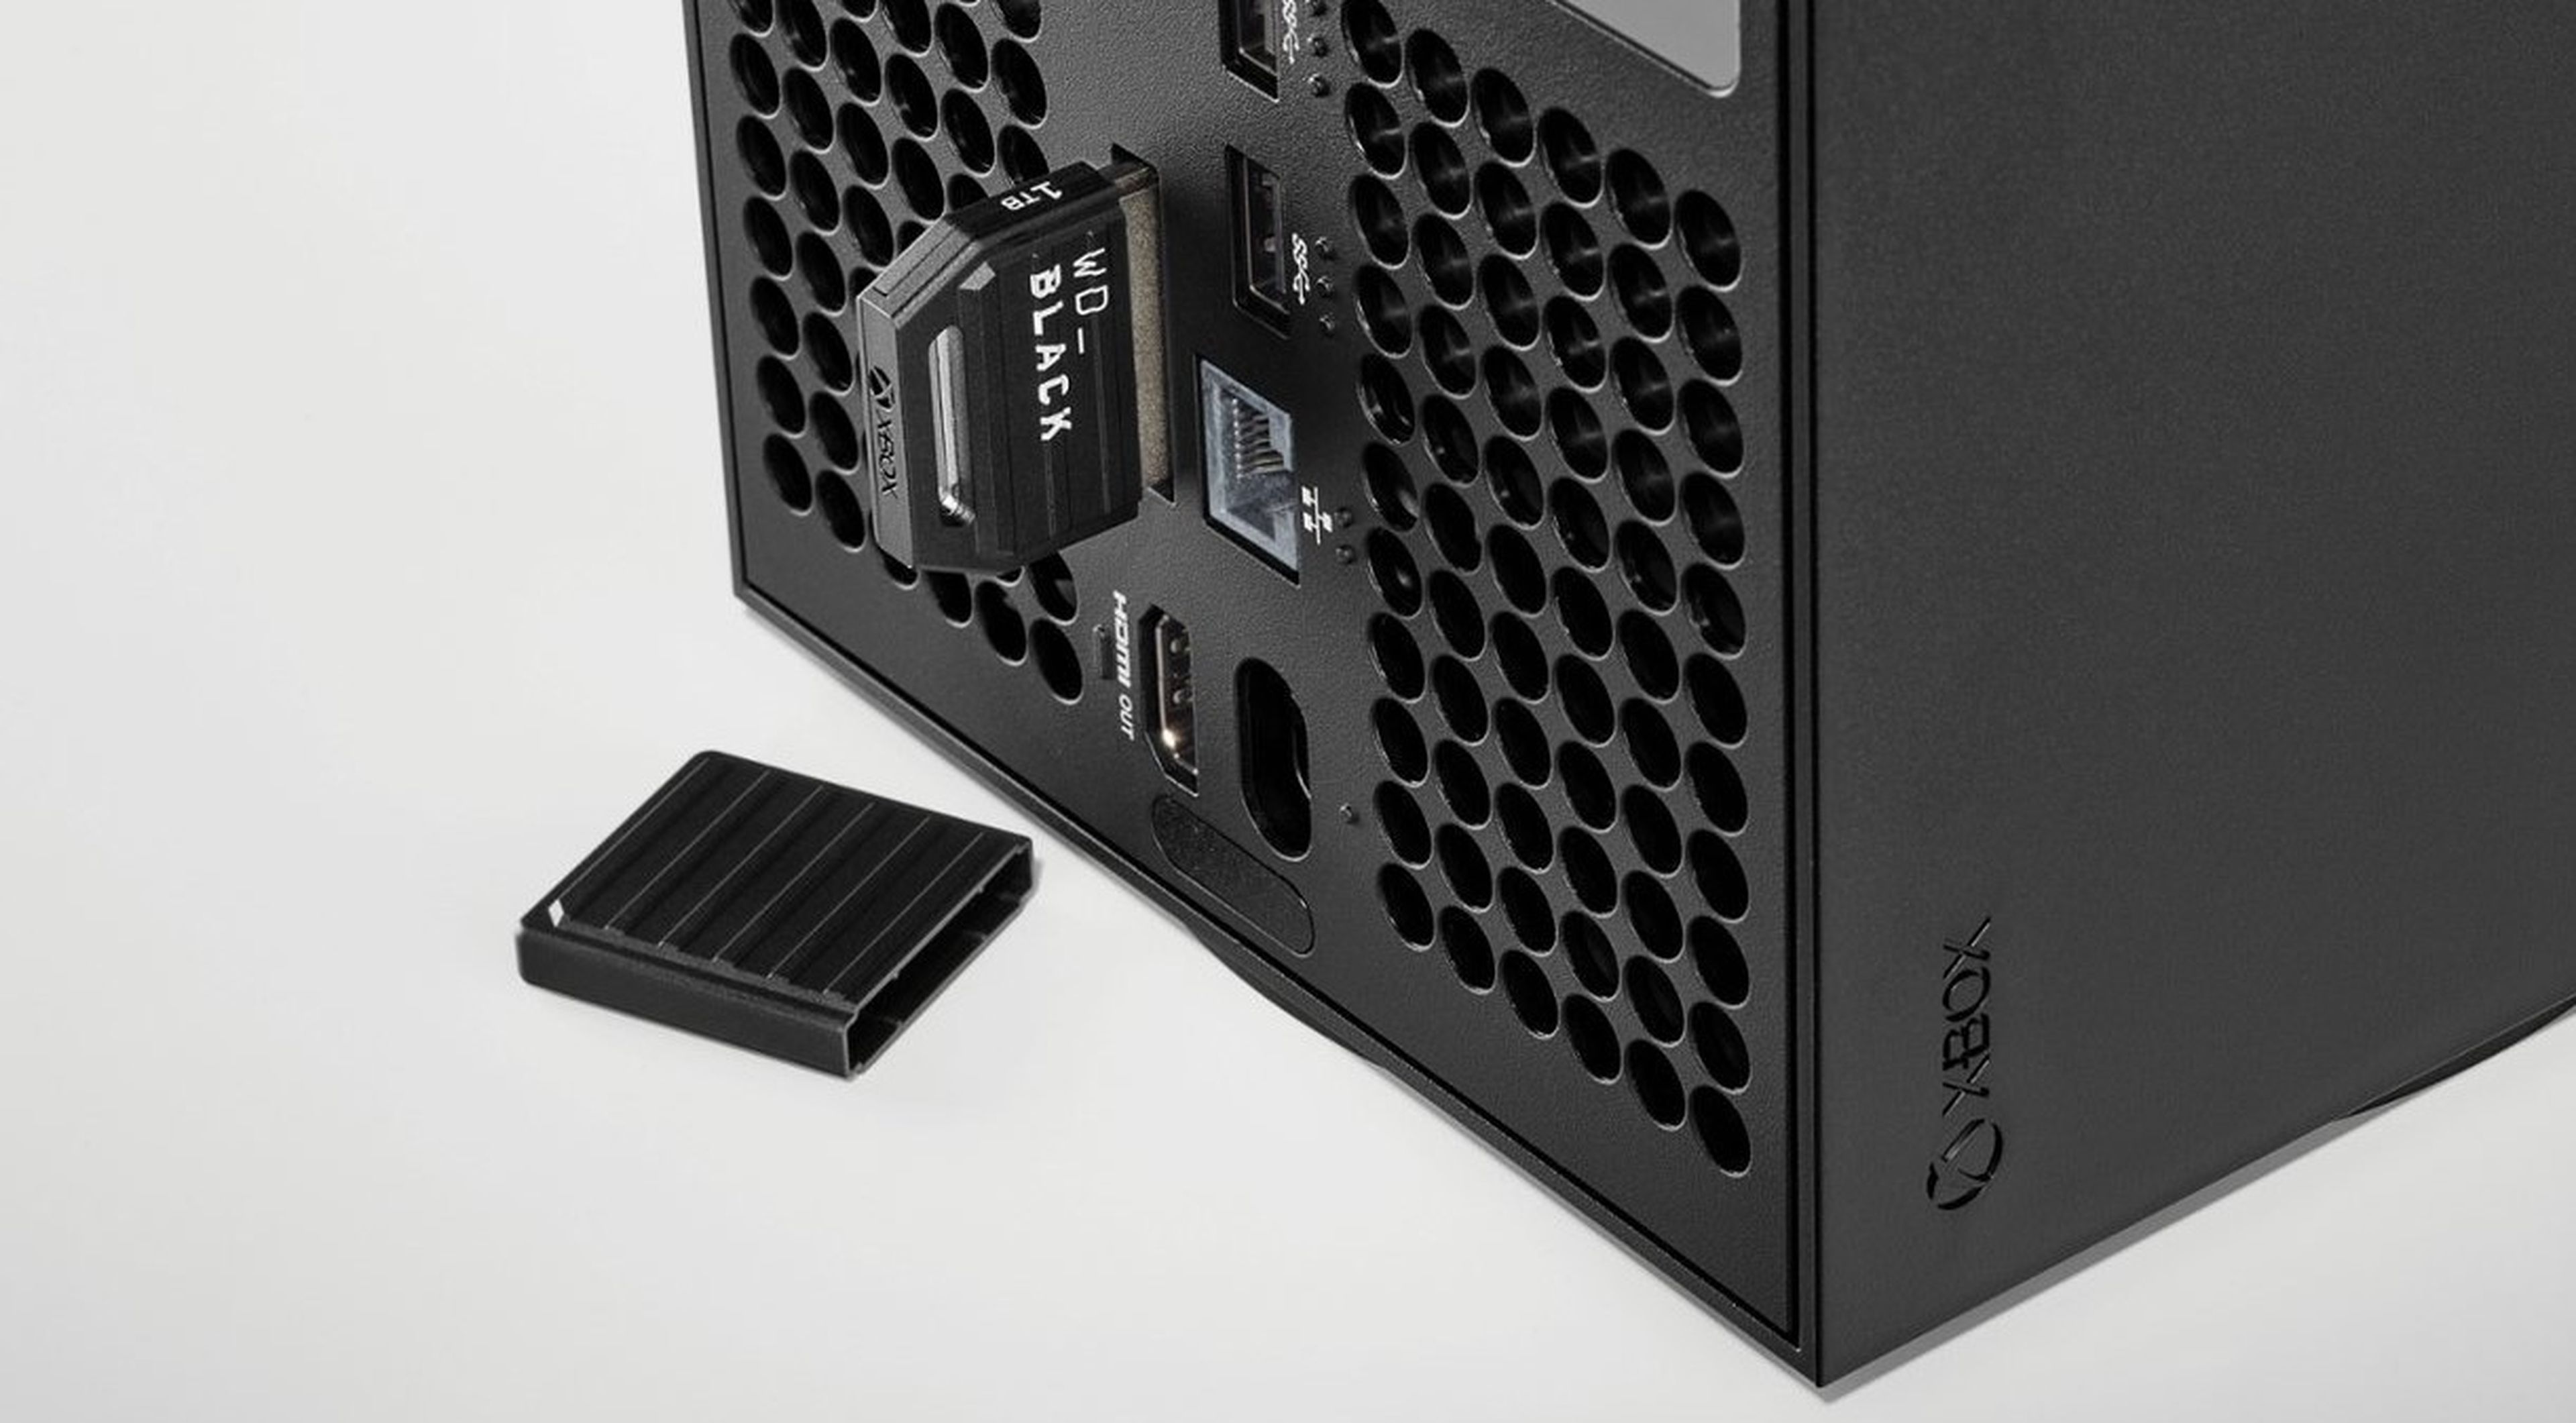 La SSD de almacenamiento externo barata para Xbox Series X|S | Hobby Consolas